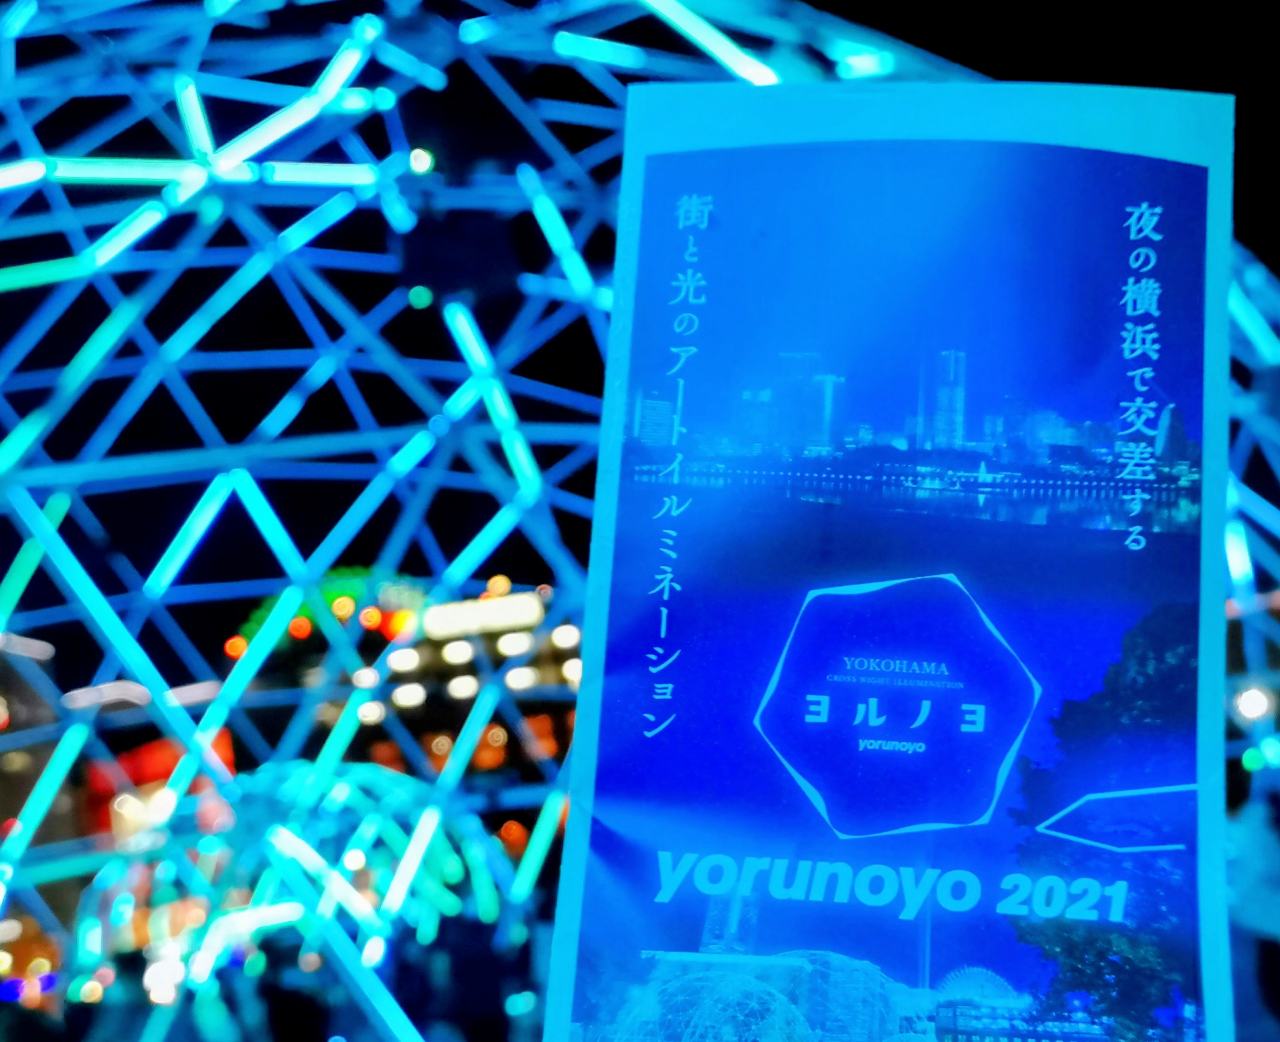 神奈川県横浜市・「ヨルノヨ-YOKOHAMA CROSS NIGHT ILLUMINATION-」パンフレット